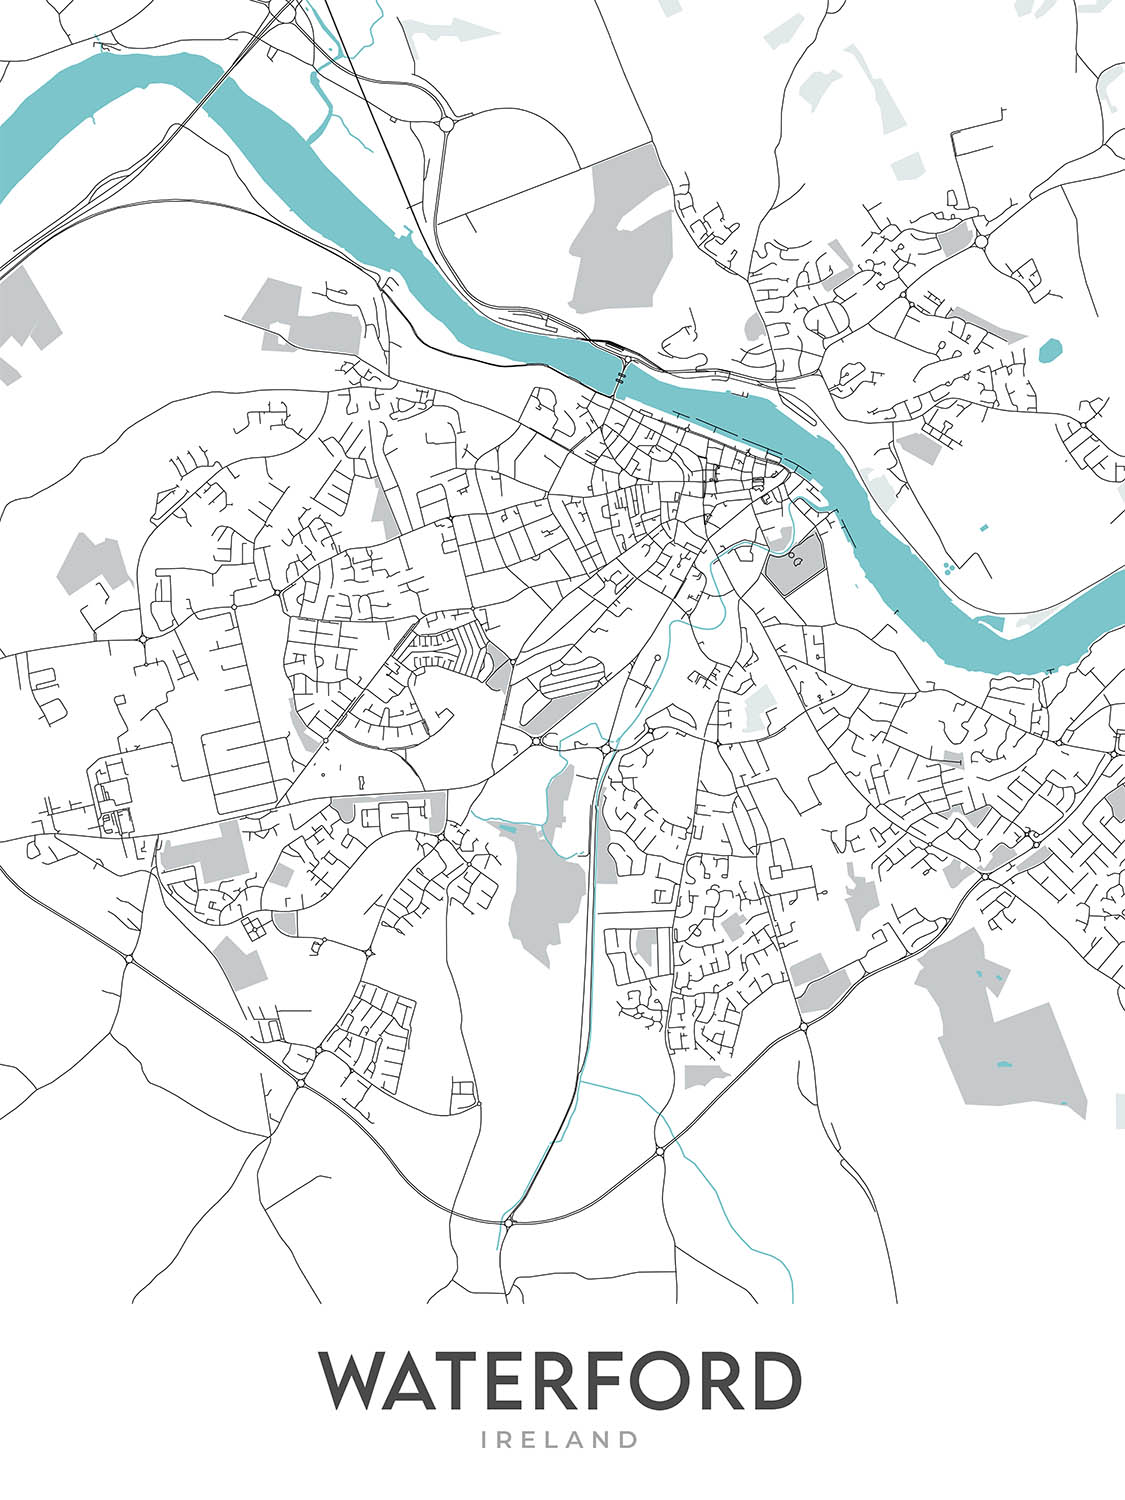 Plan de la ville moderne de Waterford, Irlande : château de Waterford, tour Reginald, cathédrale Christ Church, cathédrale Holy Trinity, rivière Suir